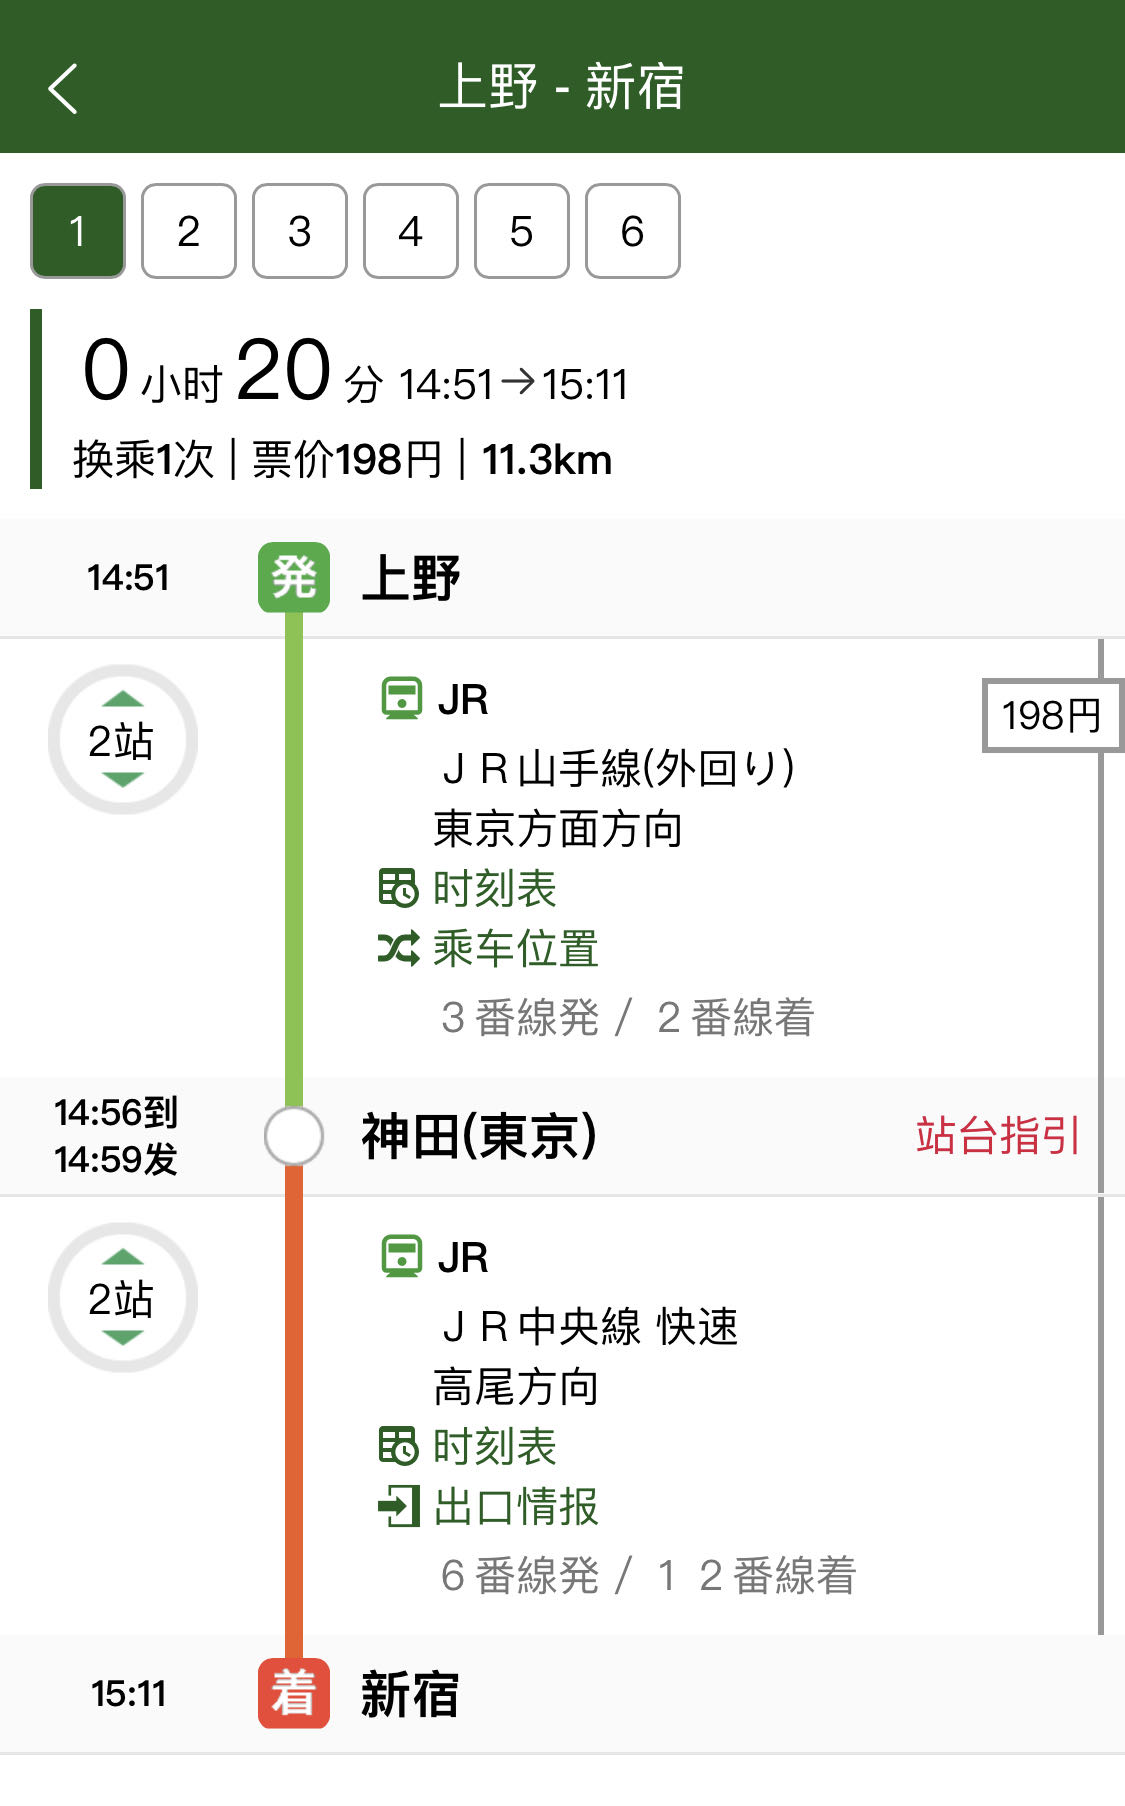 【东京】三种常用超值交通票推荐「Tokyo Subway Ticket」「东京都市地区通票」及「东京一日券」介绍 T25